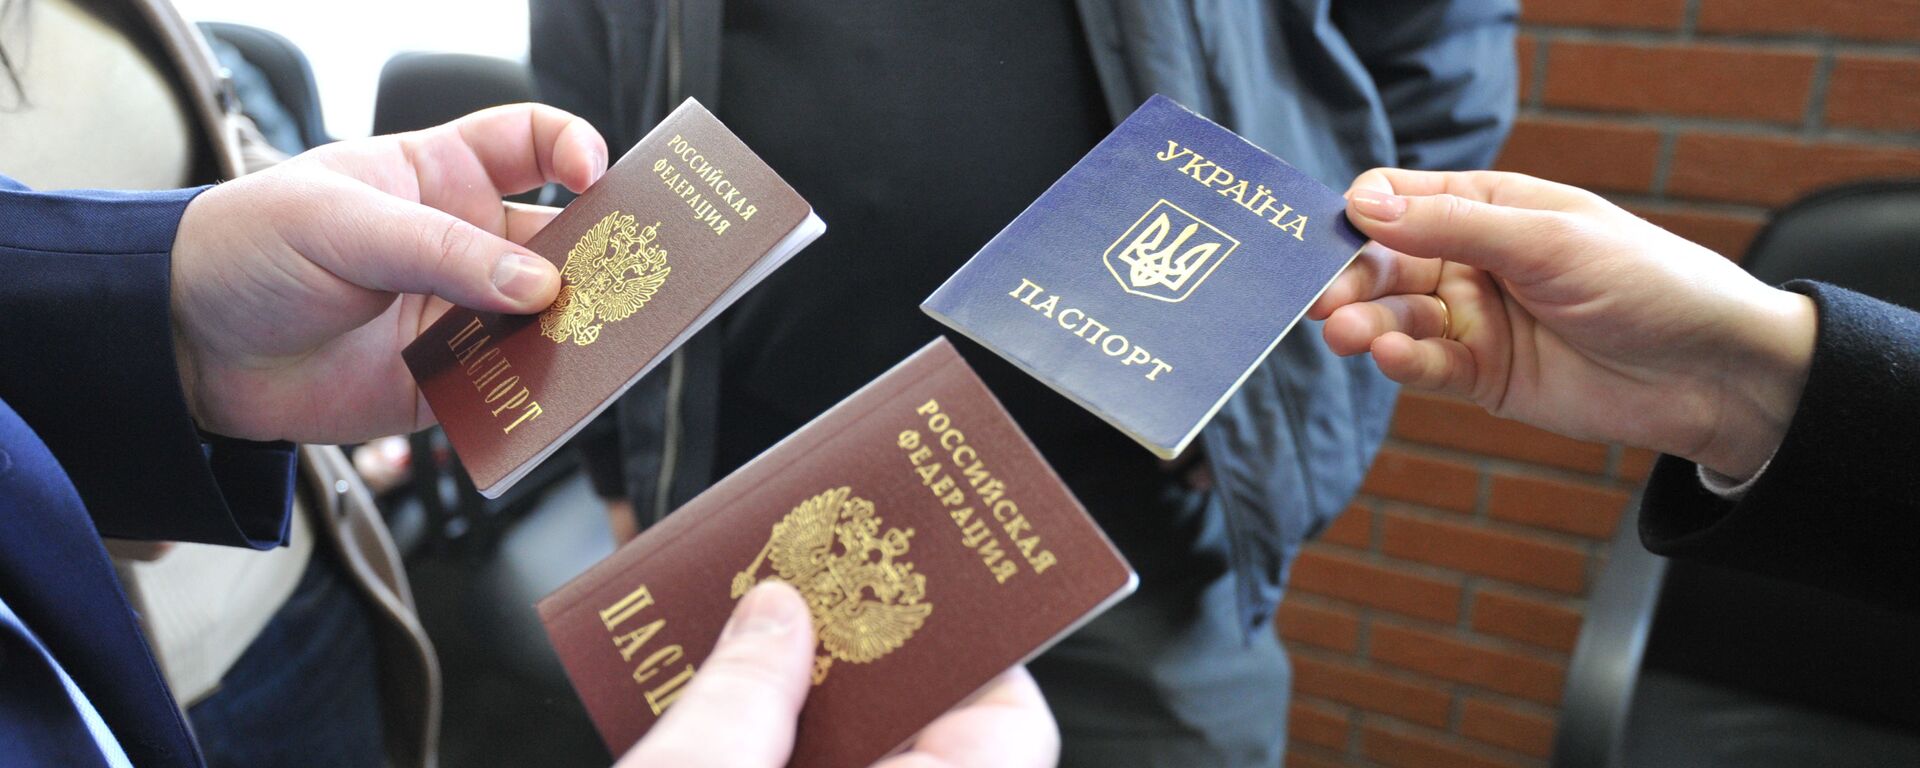 Получение паспортов Российской Федерации - Sputnik Таджикистан, 1920, 01.02.2021